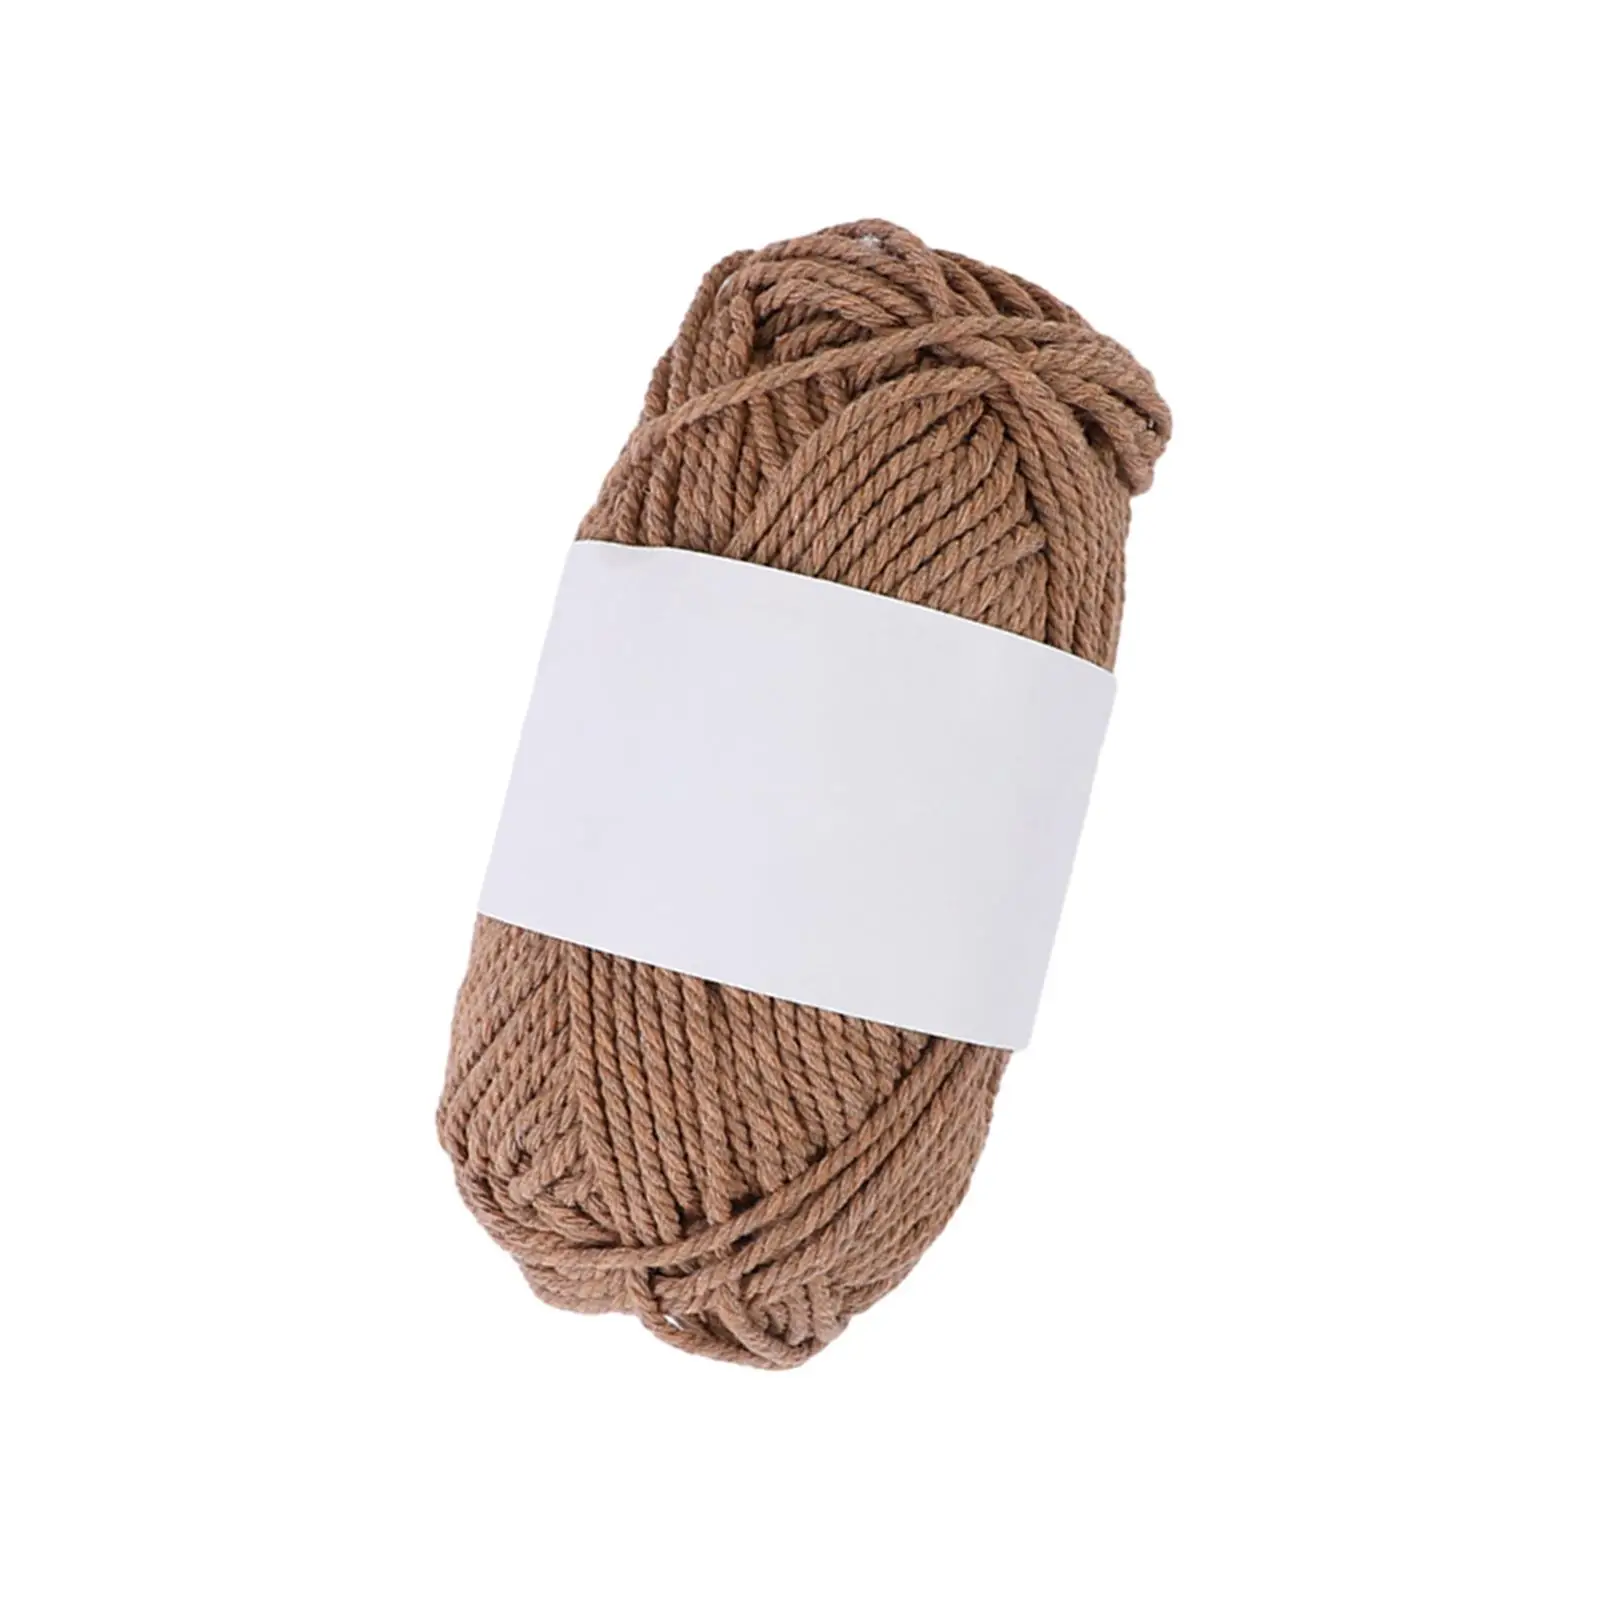 Knitting Yarn Crochet Yarn for Scarves Crochet Projects Needlework